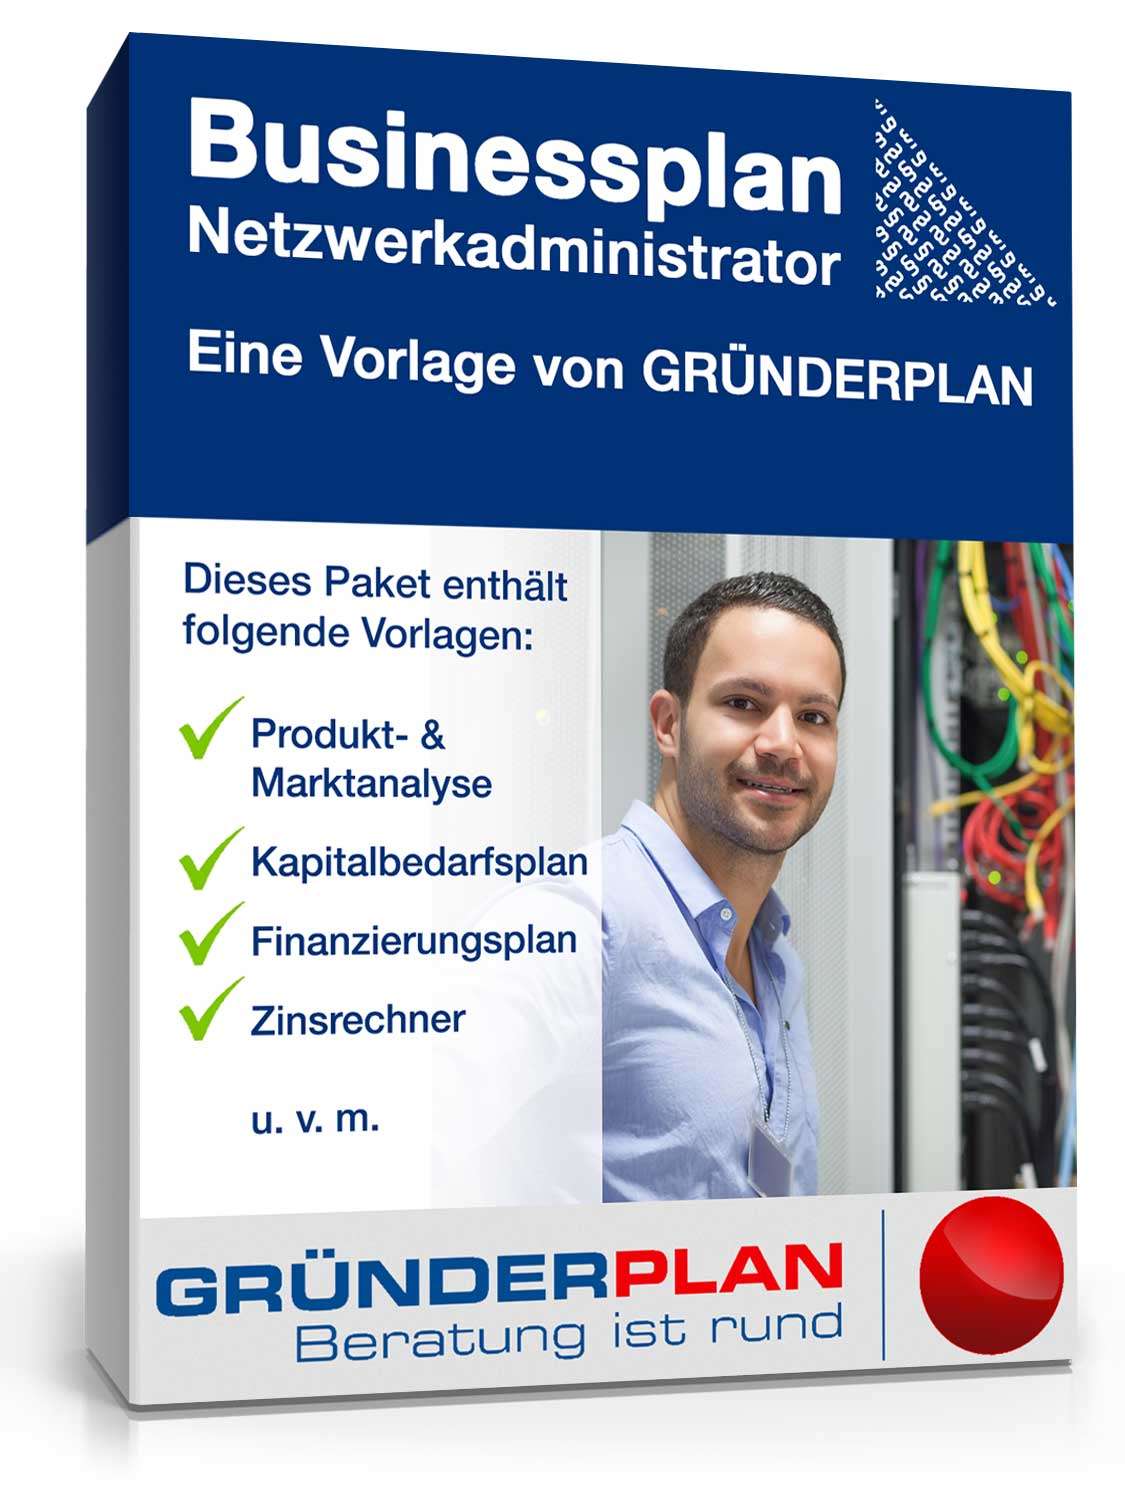 Hauptbild des Produkts: Businessplan Netzwerkadministrator von Gründerplan